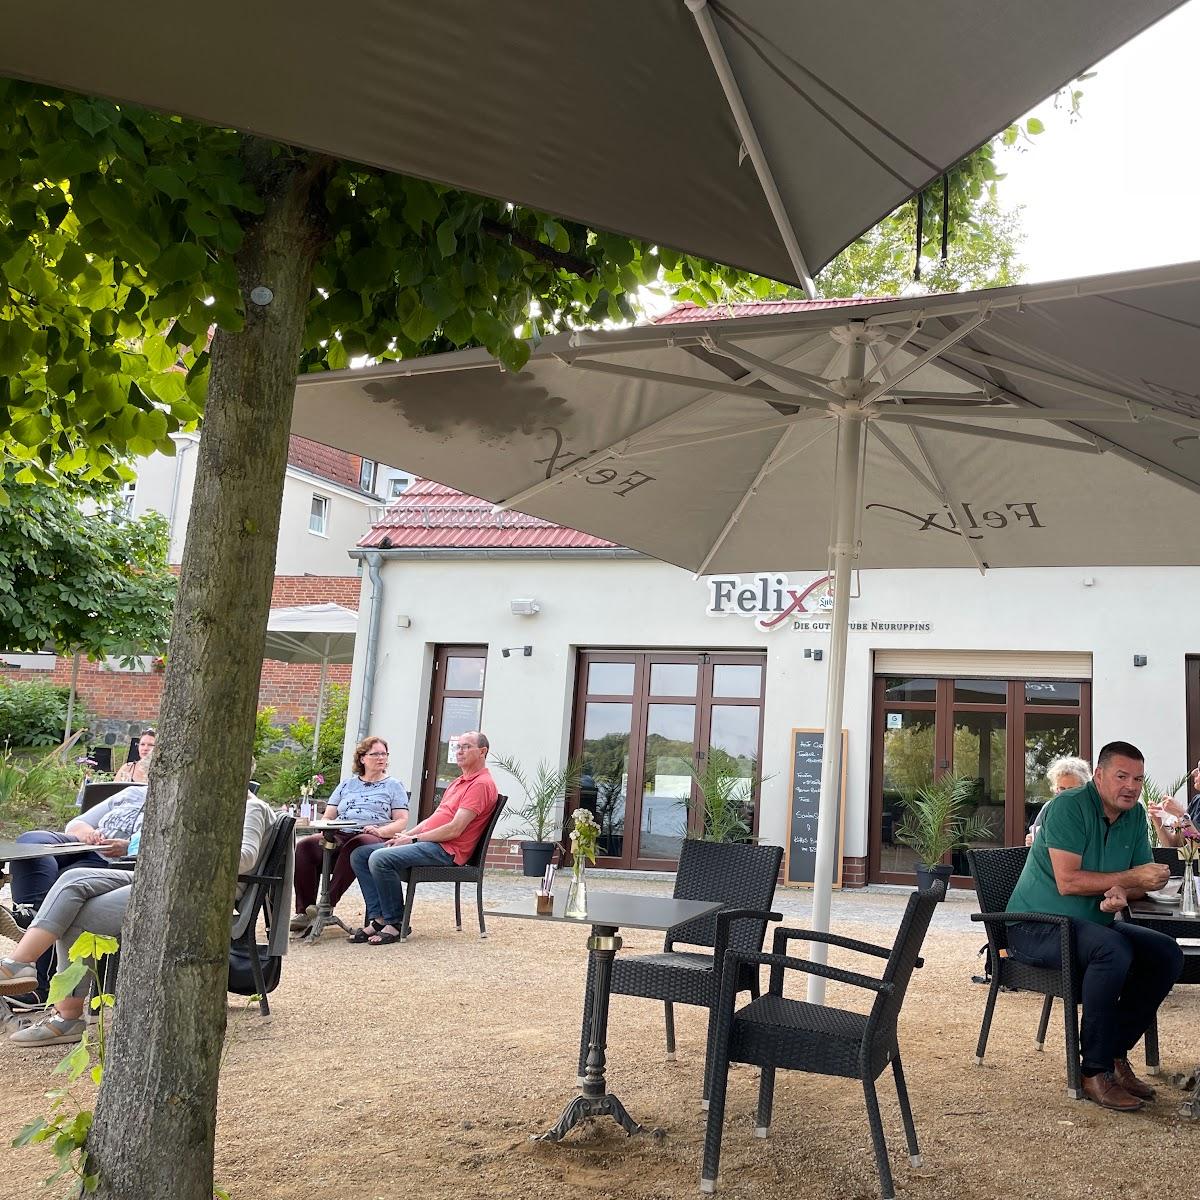 Restaurant "Felix - Die gute Stube s" in Neuruppin